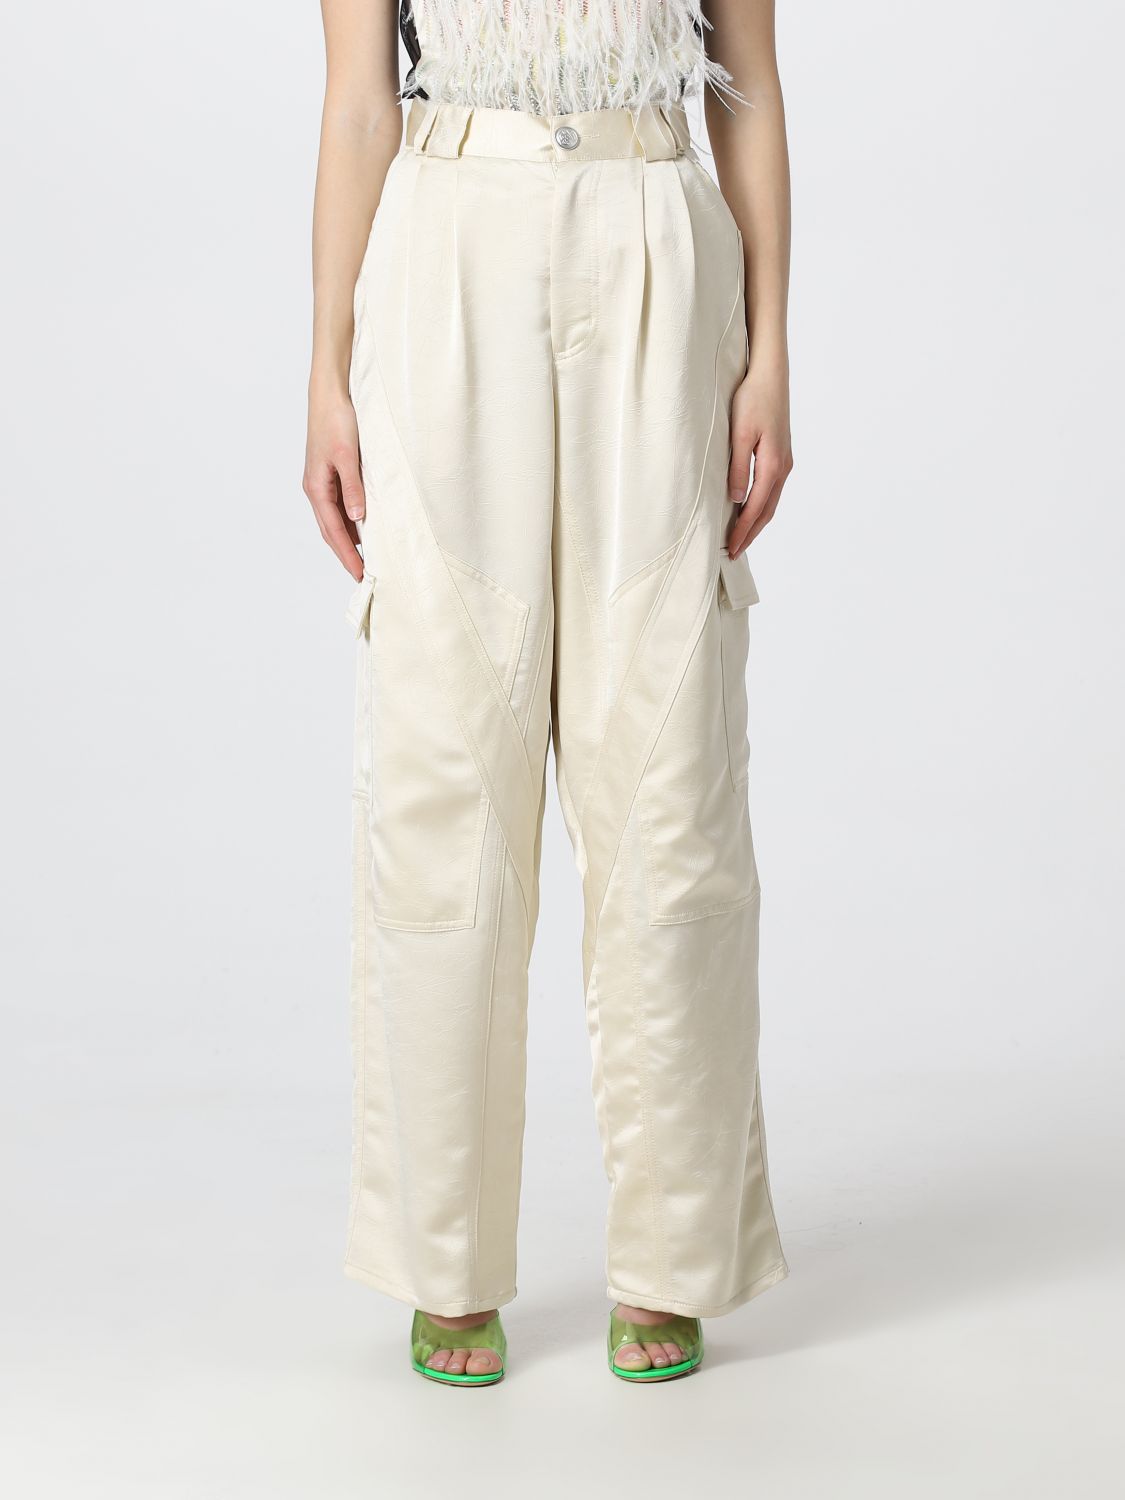 KOCHE': pants for woman - Ivory | Koche' pants SK3KA0050S76737 online ...